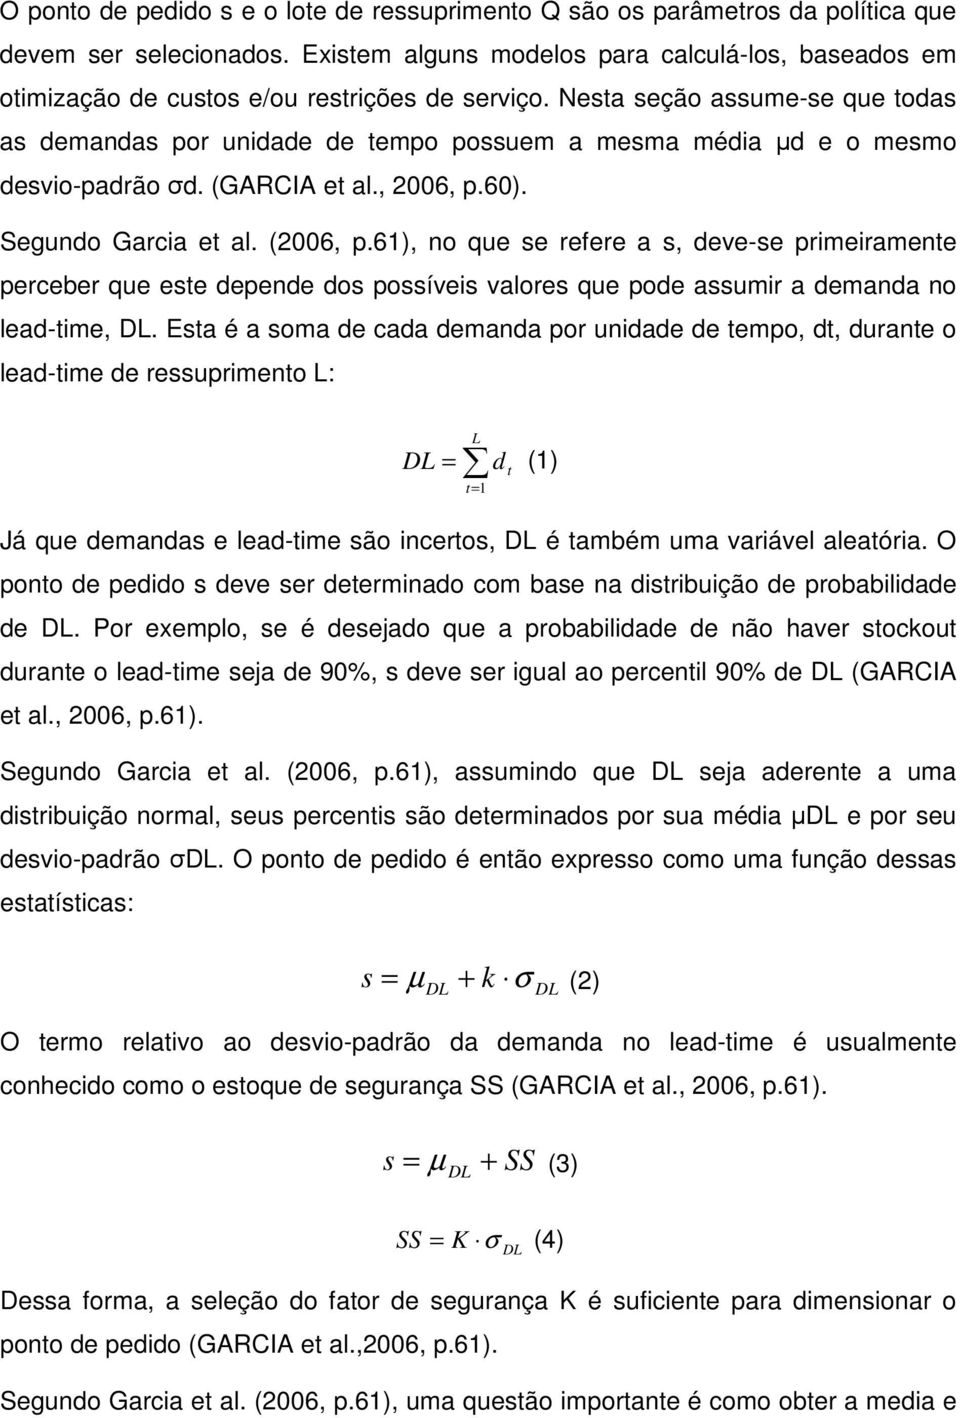 Nesta seção assume-se que todas as demandas por unidade de tempo possuem a mesma média µd e o mesmo desvio-padrão σd. (GARCIA et al., 2006, p.60). Segundo Garcia et al. (2006, p.